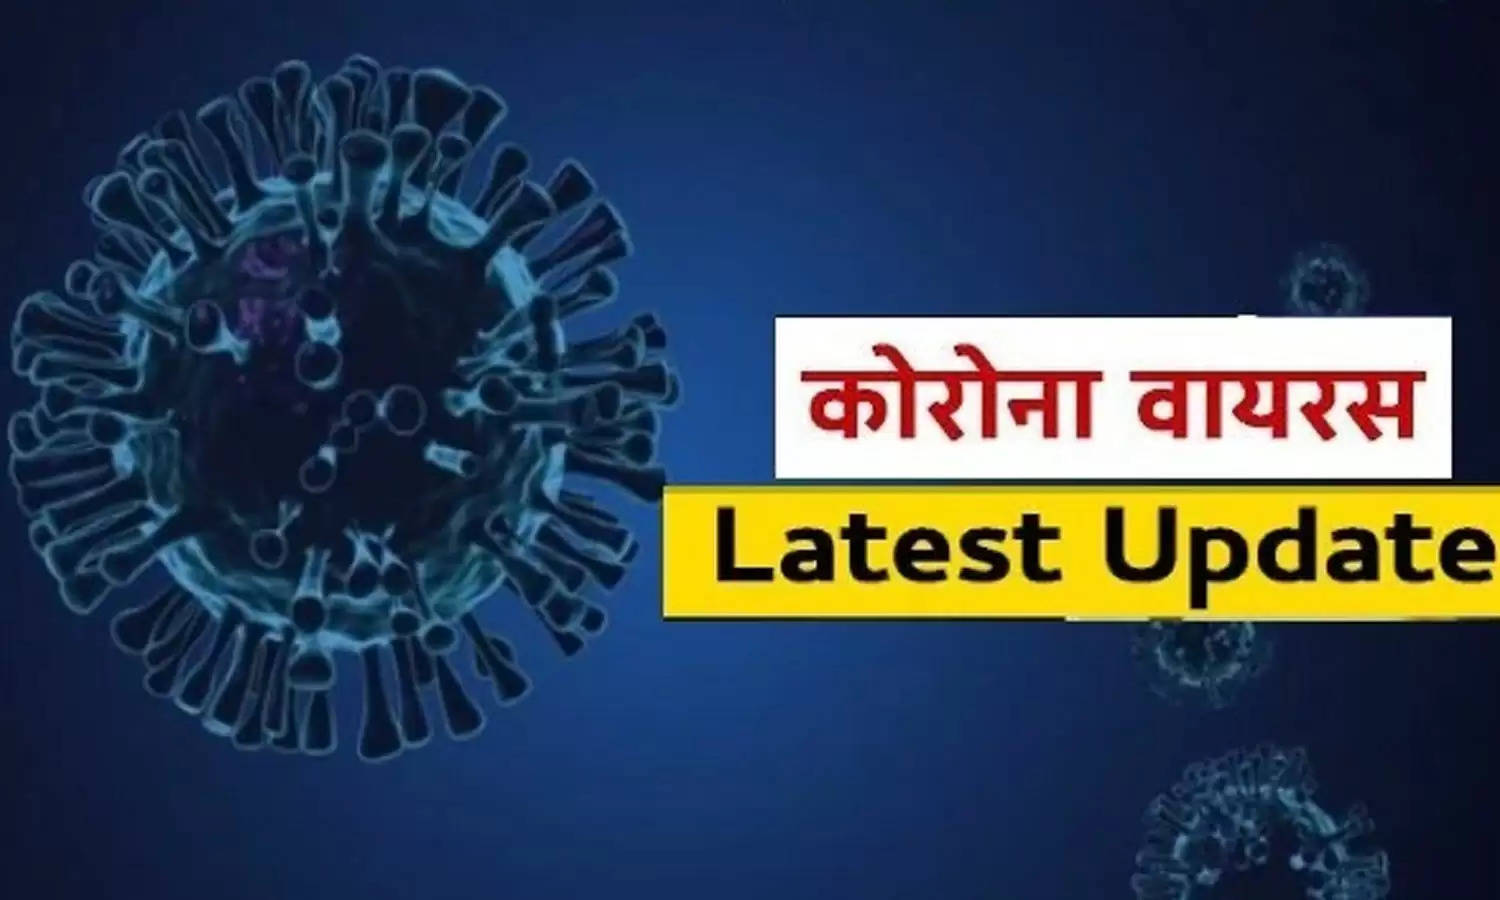 Uttarakhand Corona Update : प्रदेश में सामने आए 294 नए कोरोना संक्रमित मामले, संक्रमण दर 12 प्रतिशत से अधिक